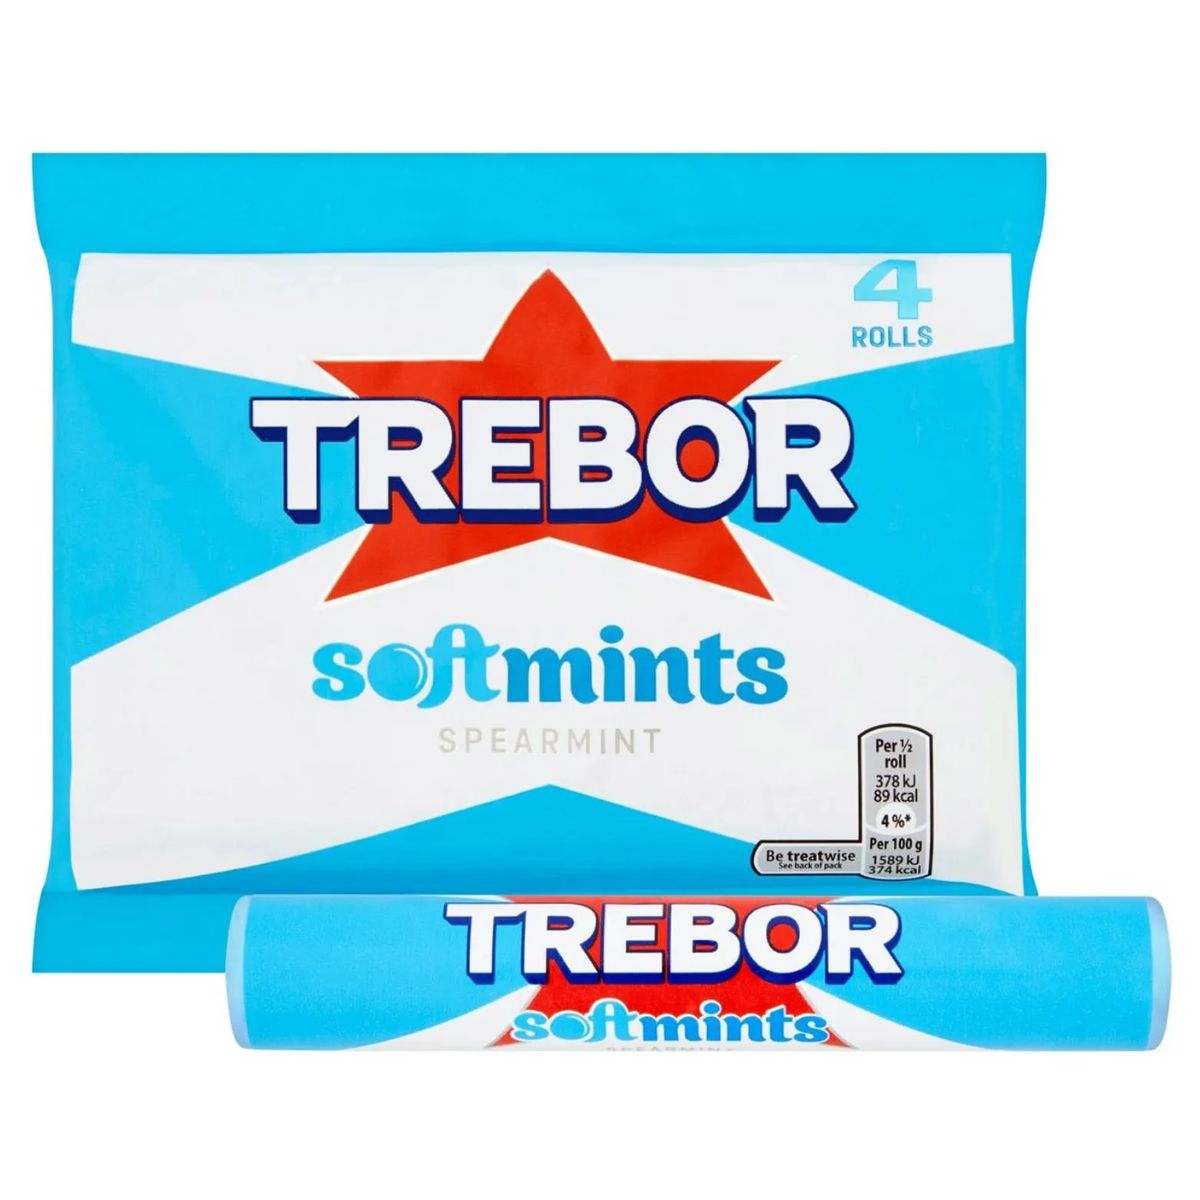 Trebor - Spearmint Softmints Roll - 45g in a package.